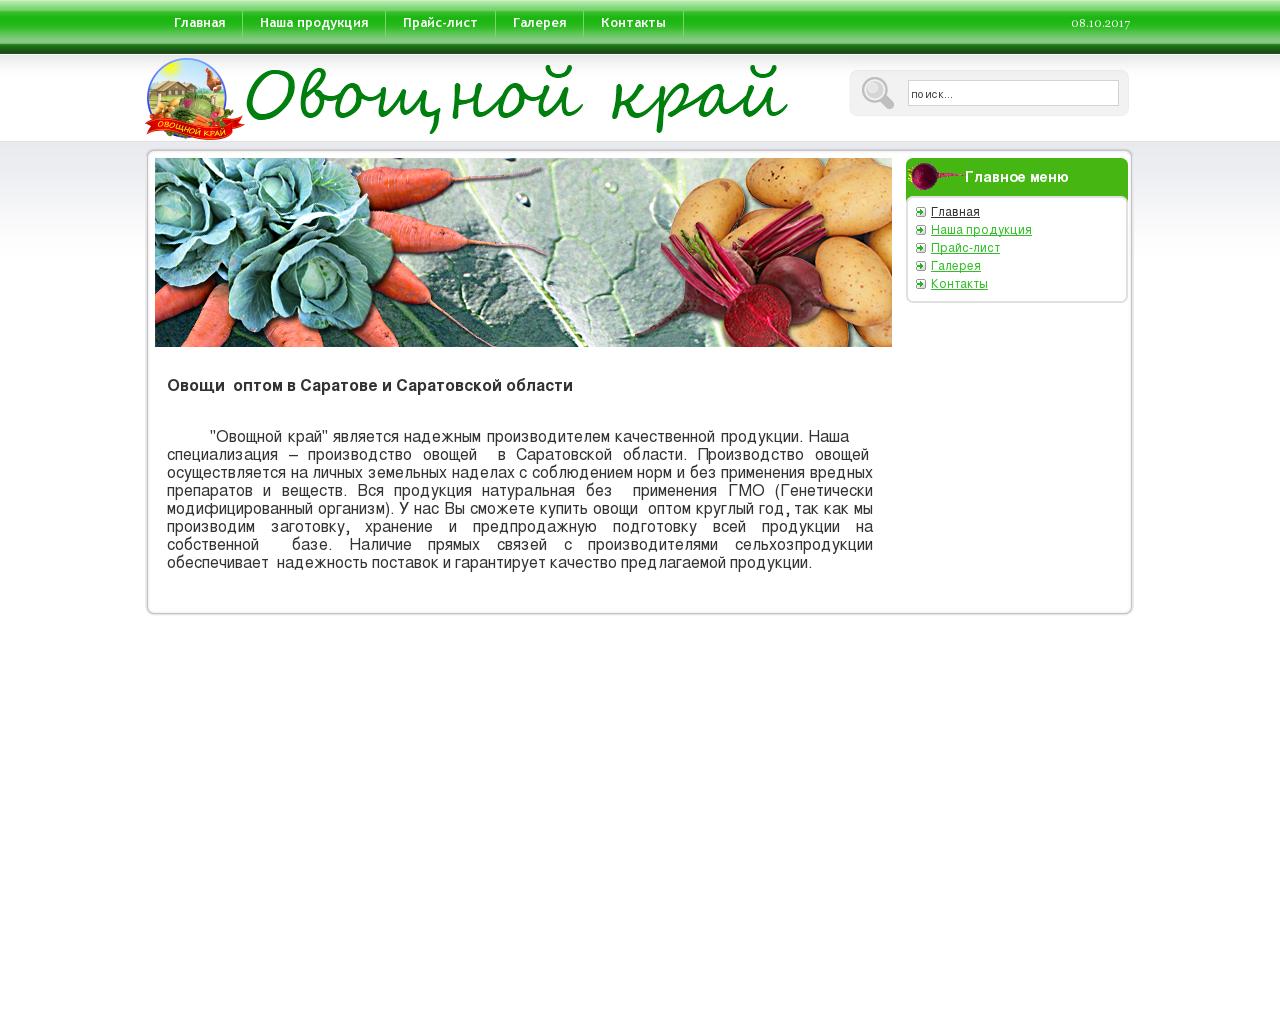 Изображение сайта vegetable-land.ru в разрешении 1280x1024